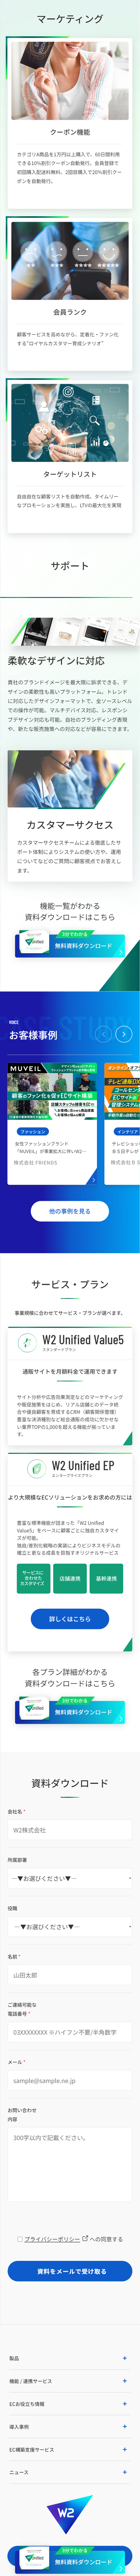 W2 Unified_sp_2